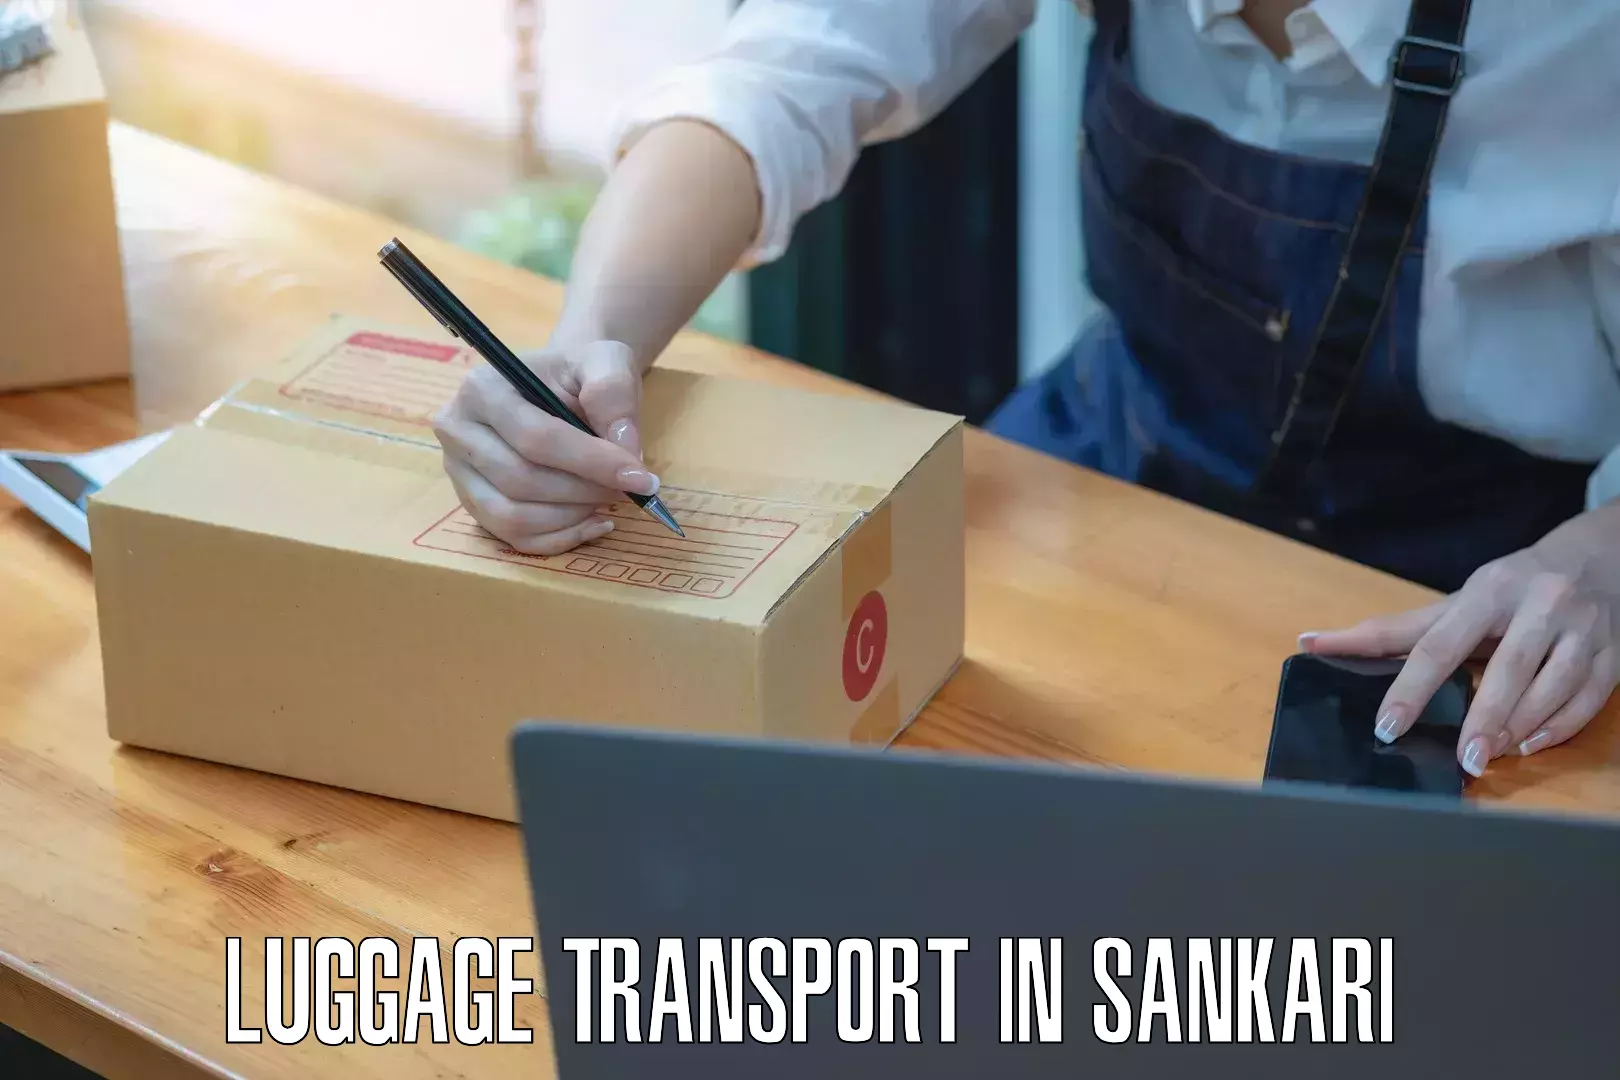 Baggage delivery estimate in Sankari